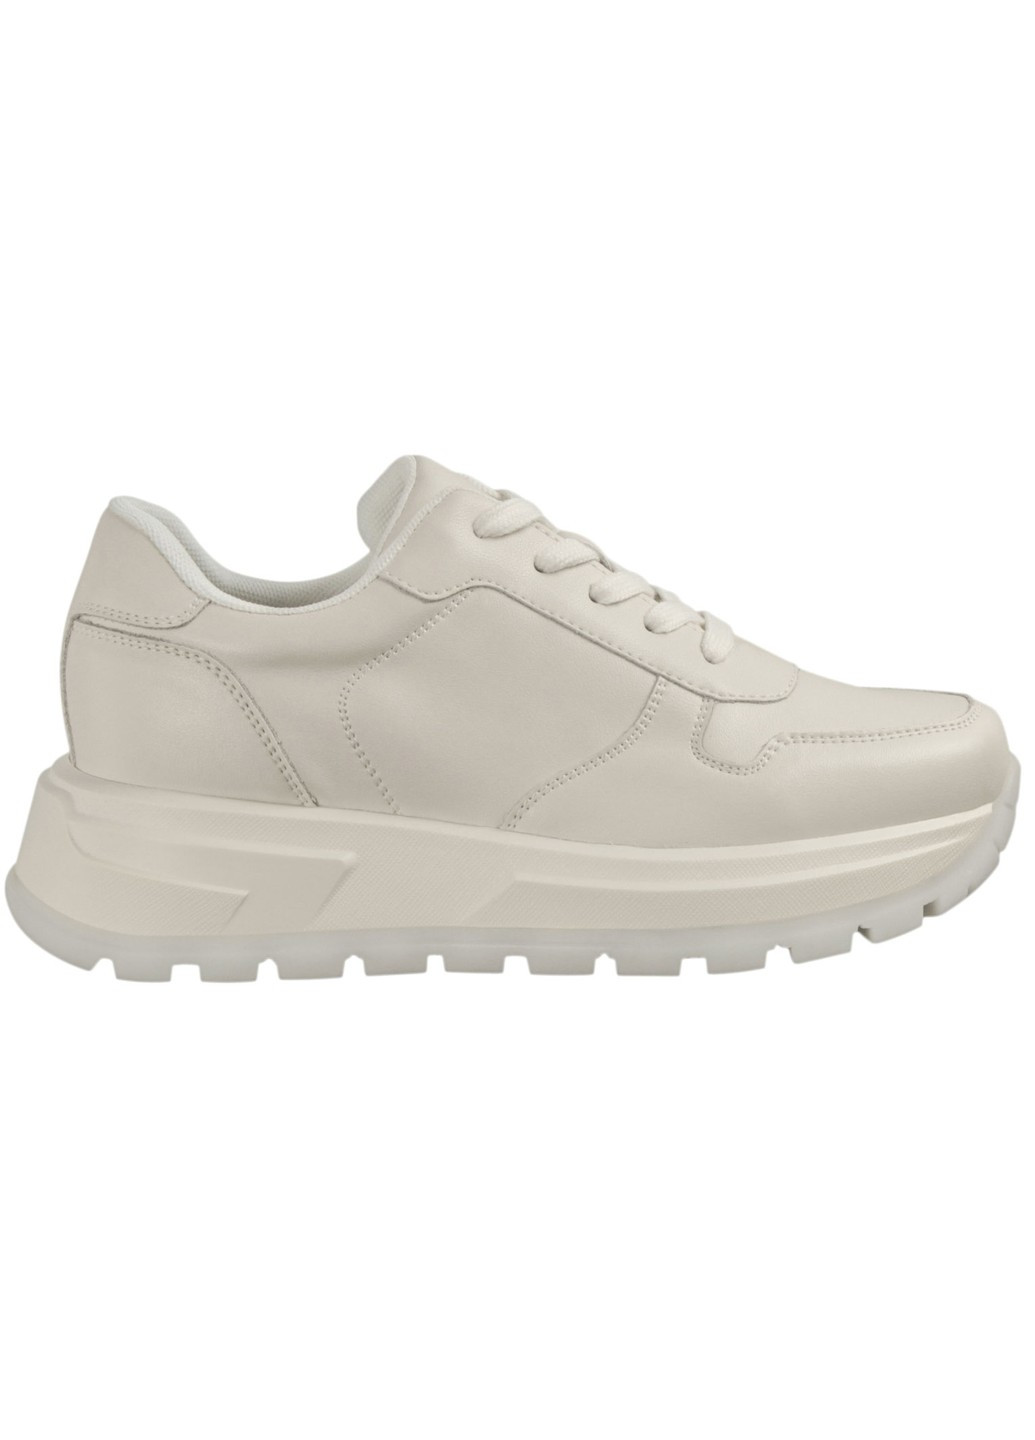 Белые демисезонные женские кроссовки 199940 Lifexpert